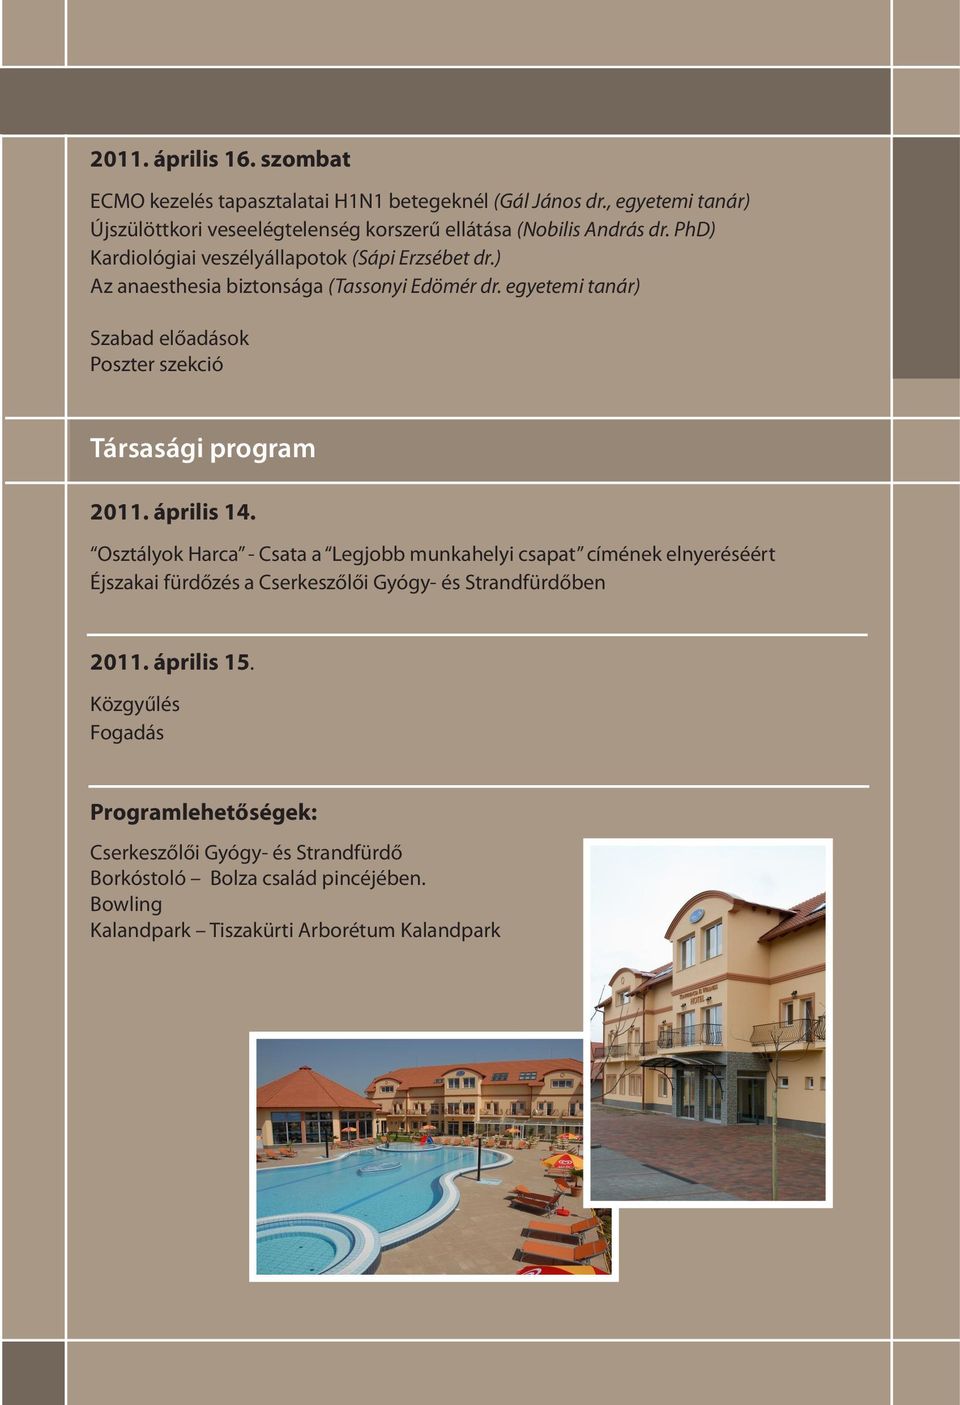 ) Az anaesthesia biztonsága (Tassonyi Edömér dr. egyetemi tanár) Szabad előadások Poszter szekció Társasági program 2011. április 14.